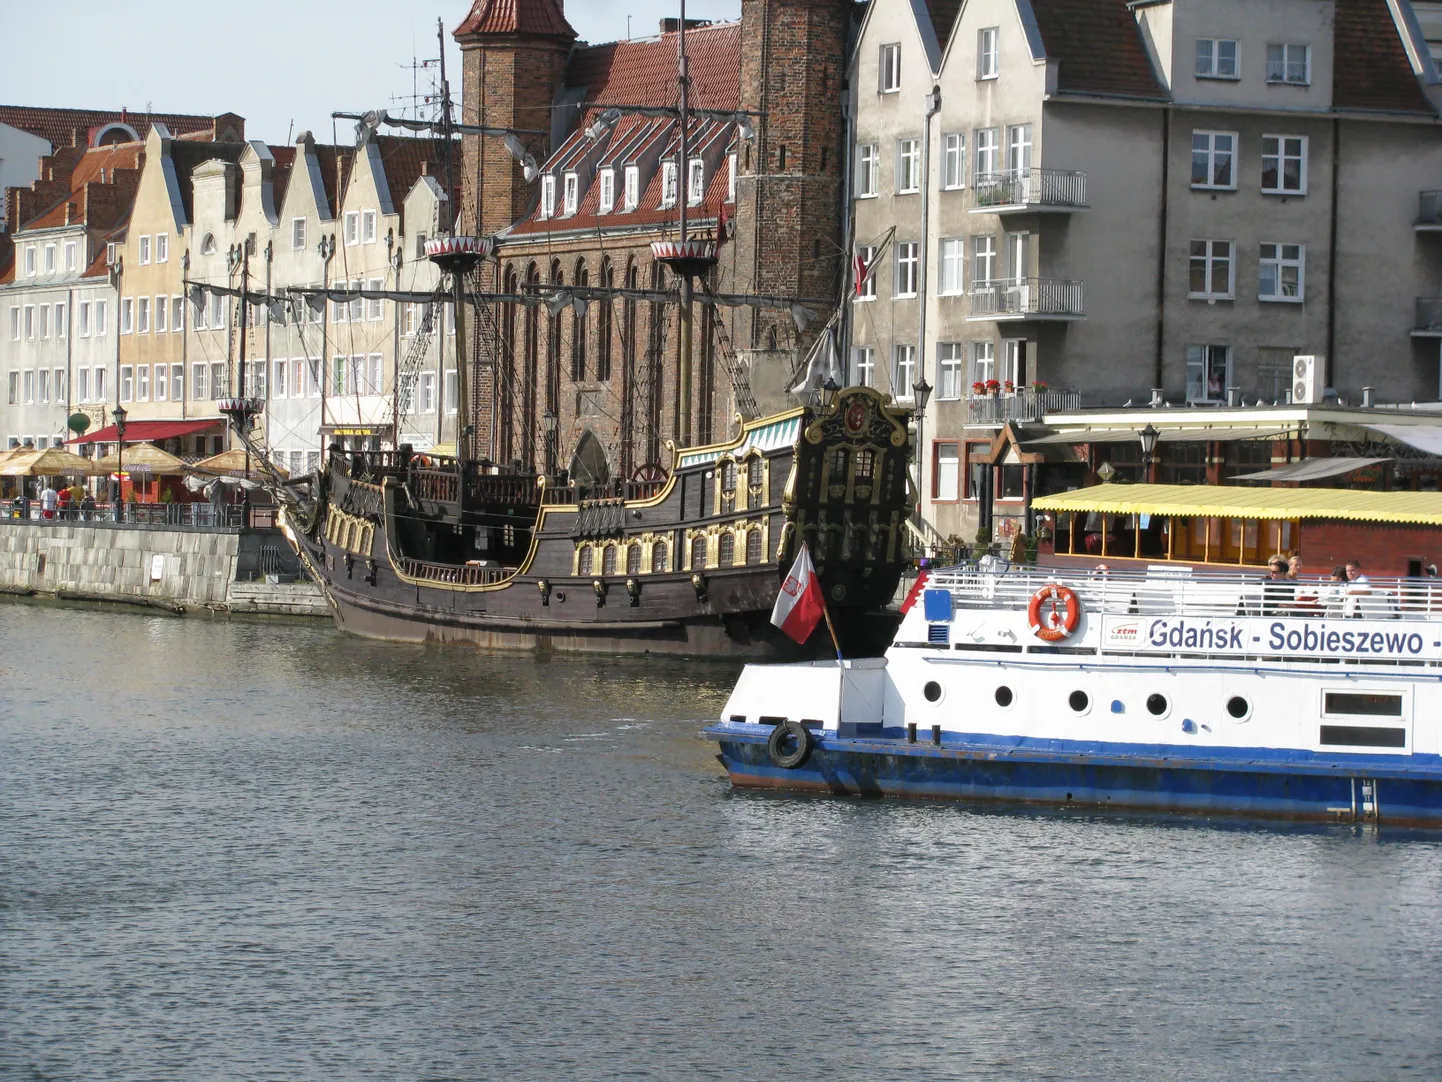 Gdanskis võib meresõidule minna nii tavalise mootorlaeva kui vanaaegse purjeka vettpidava mootorkoopiaga.